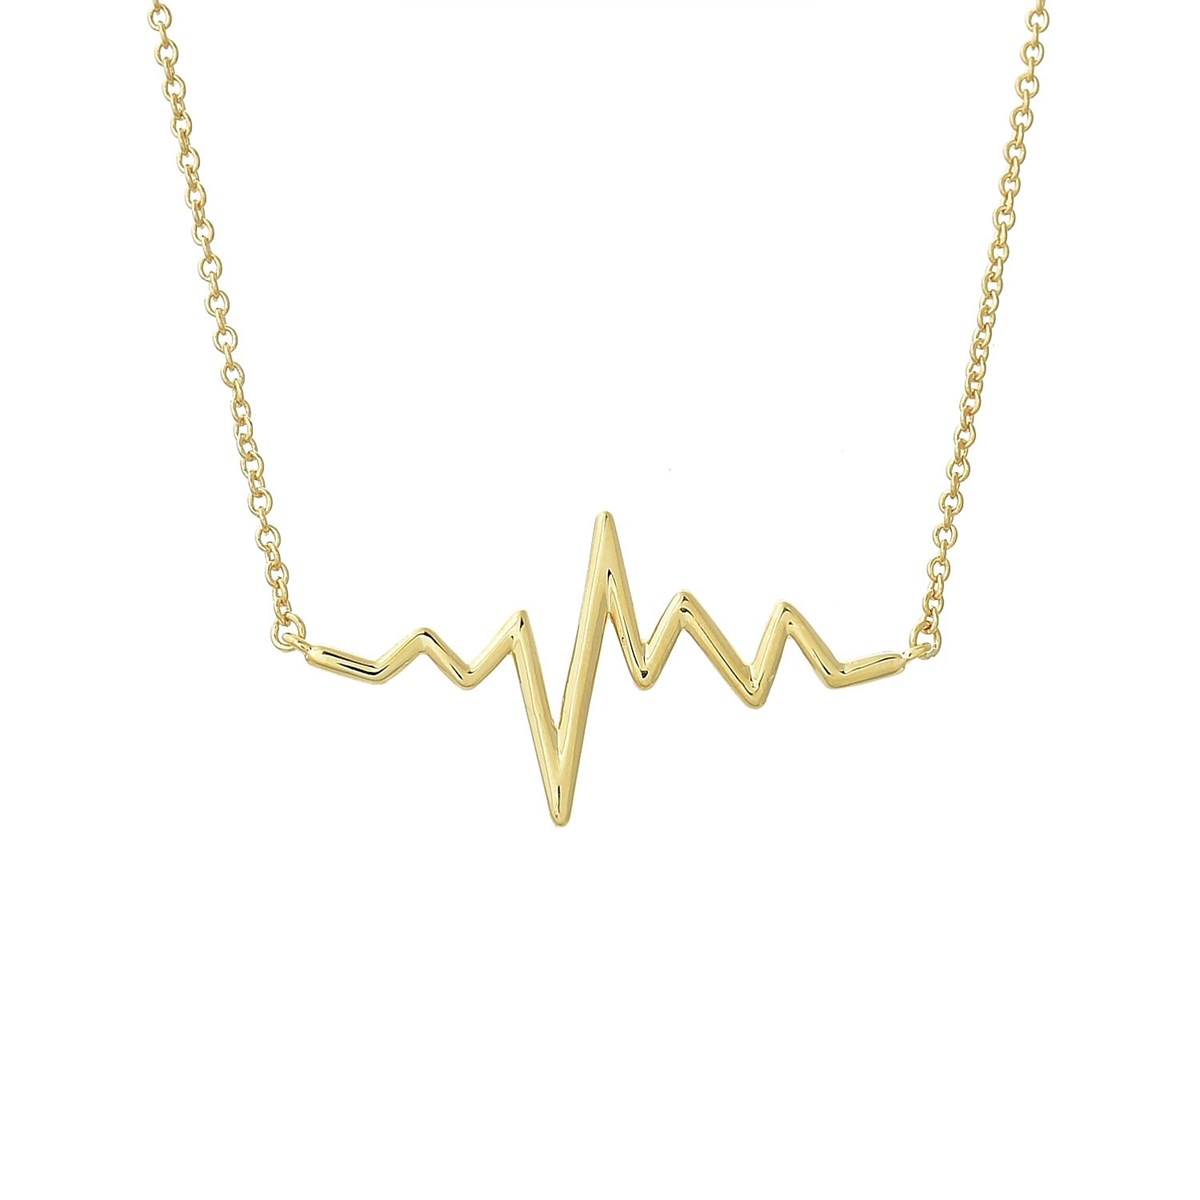 Collier électrocardiogramme rythme du coeur Plaqué OR 750 3 microns